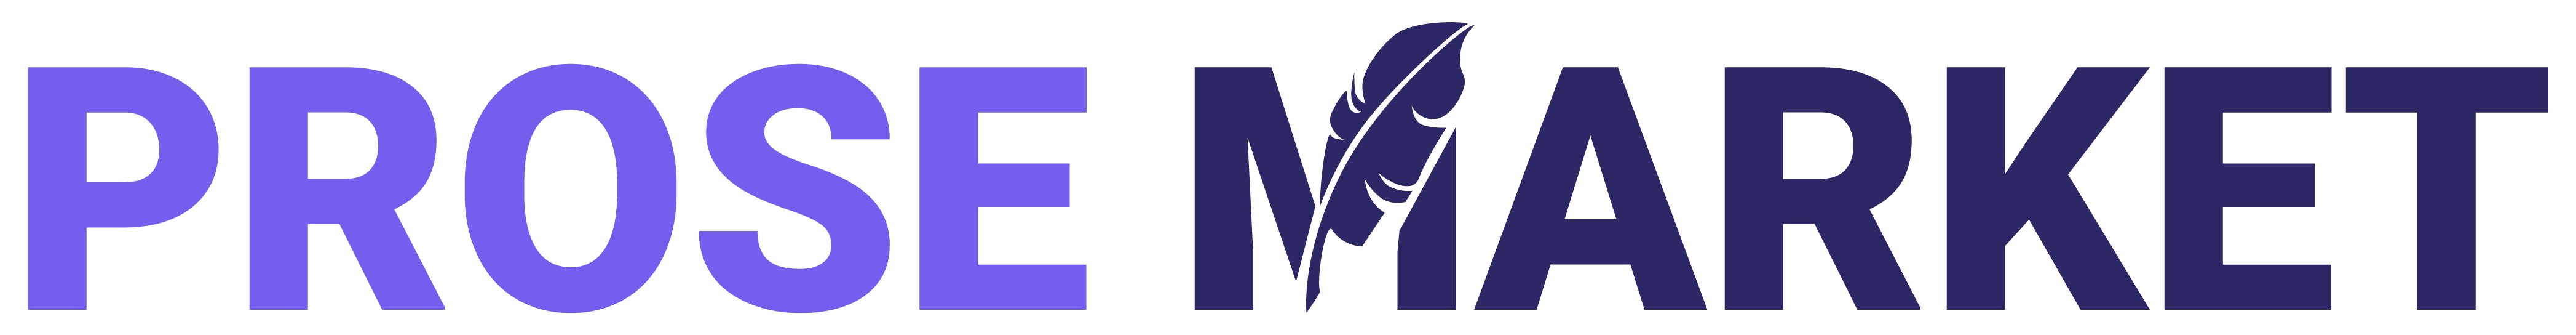 Prosemarket Logo